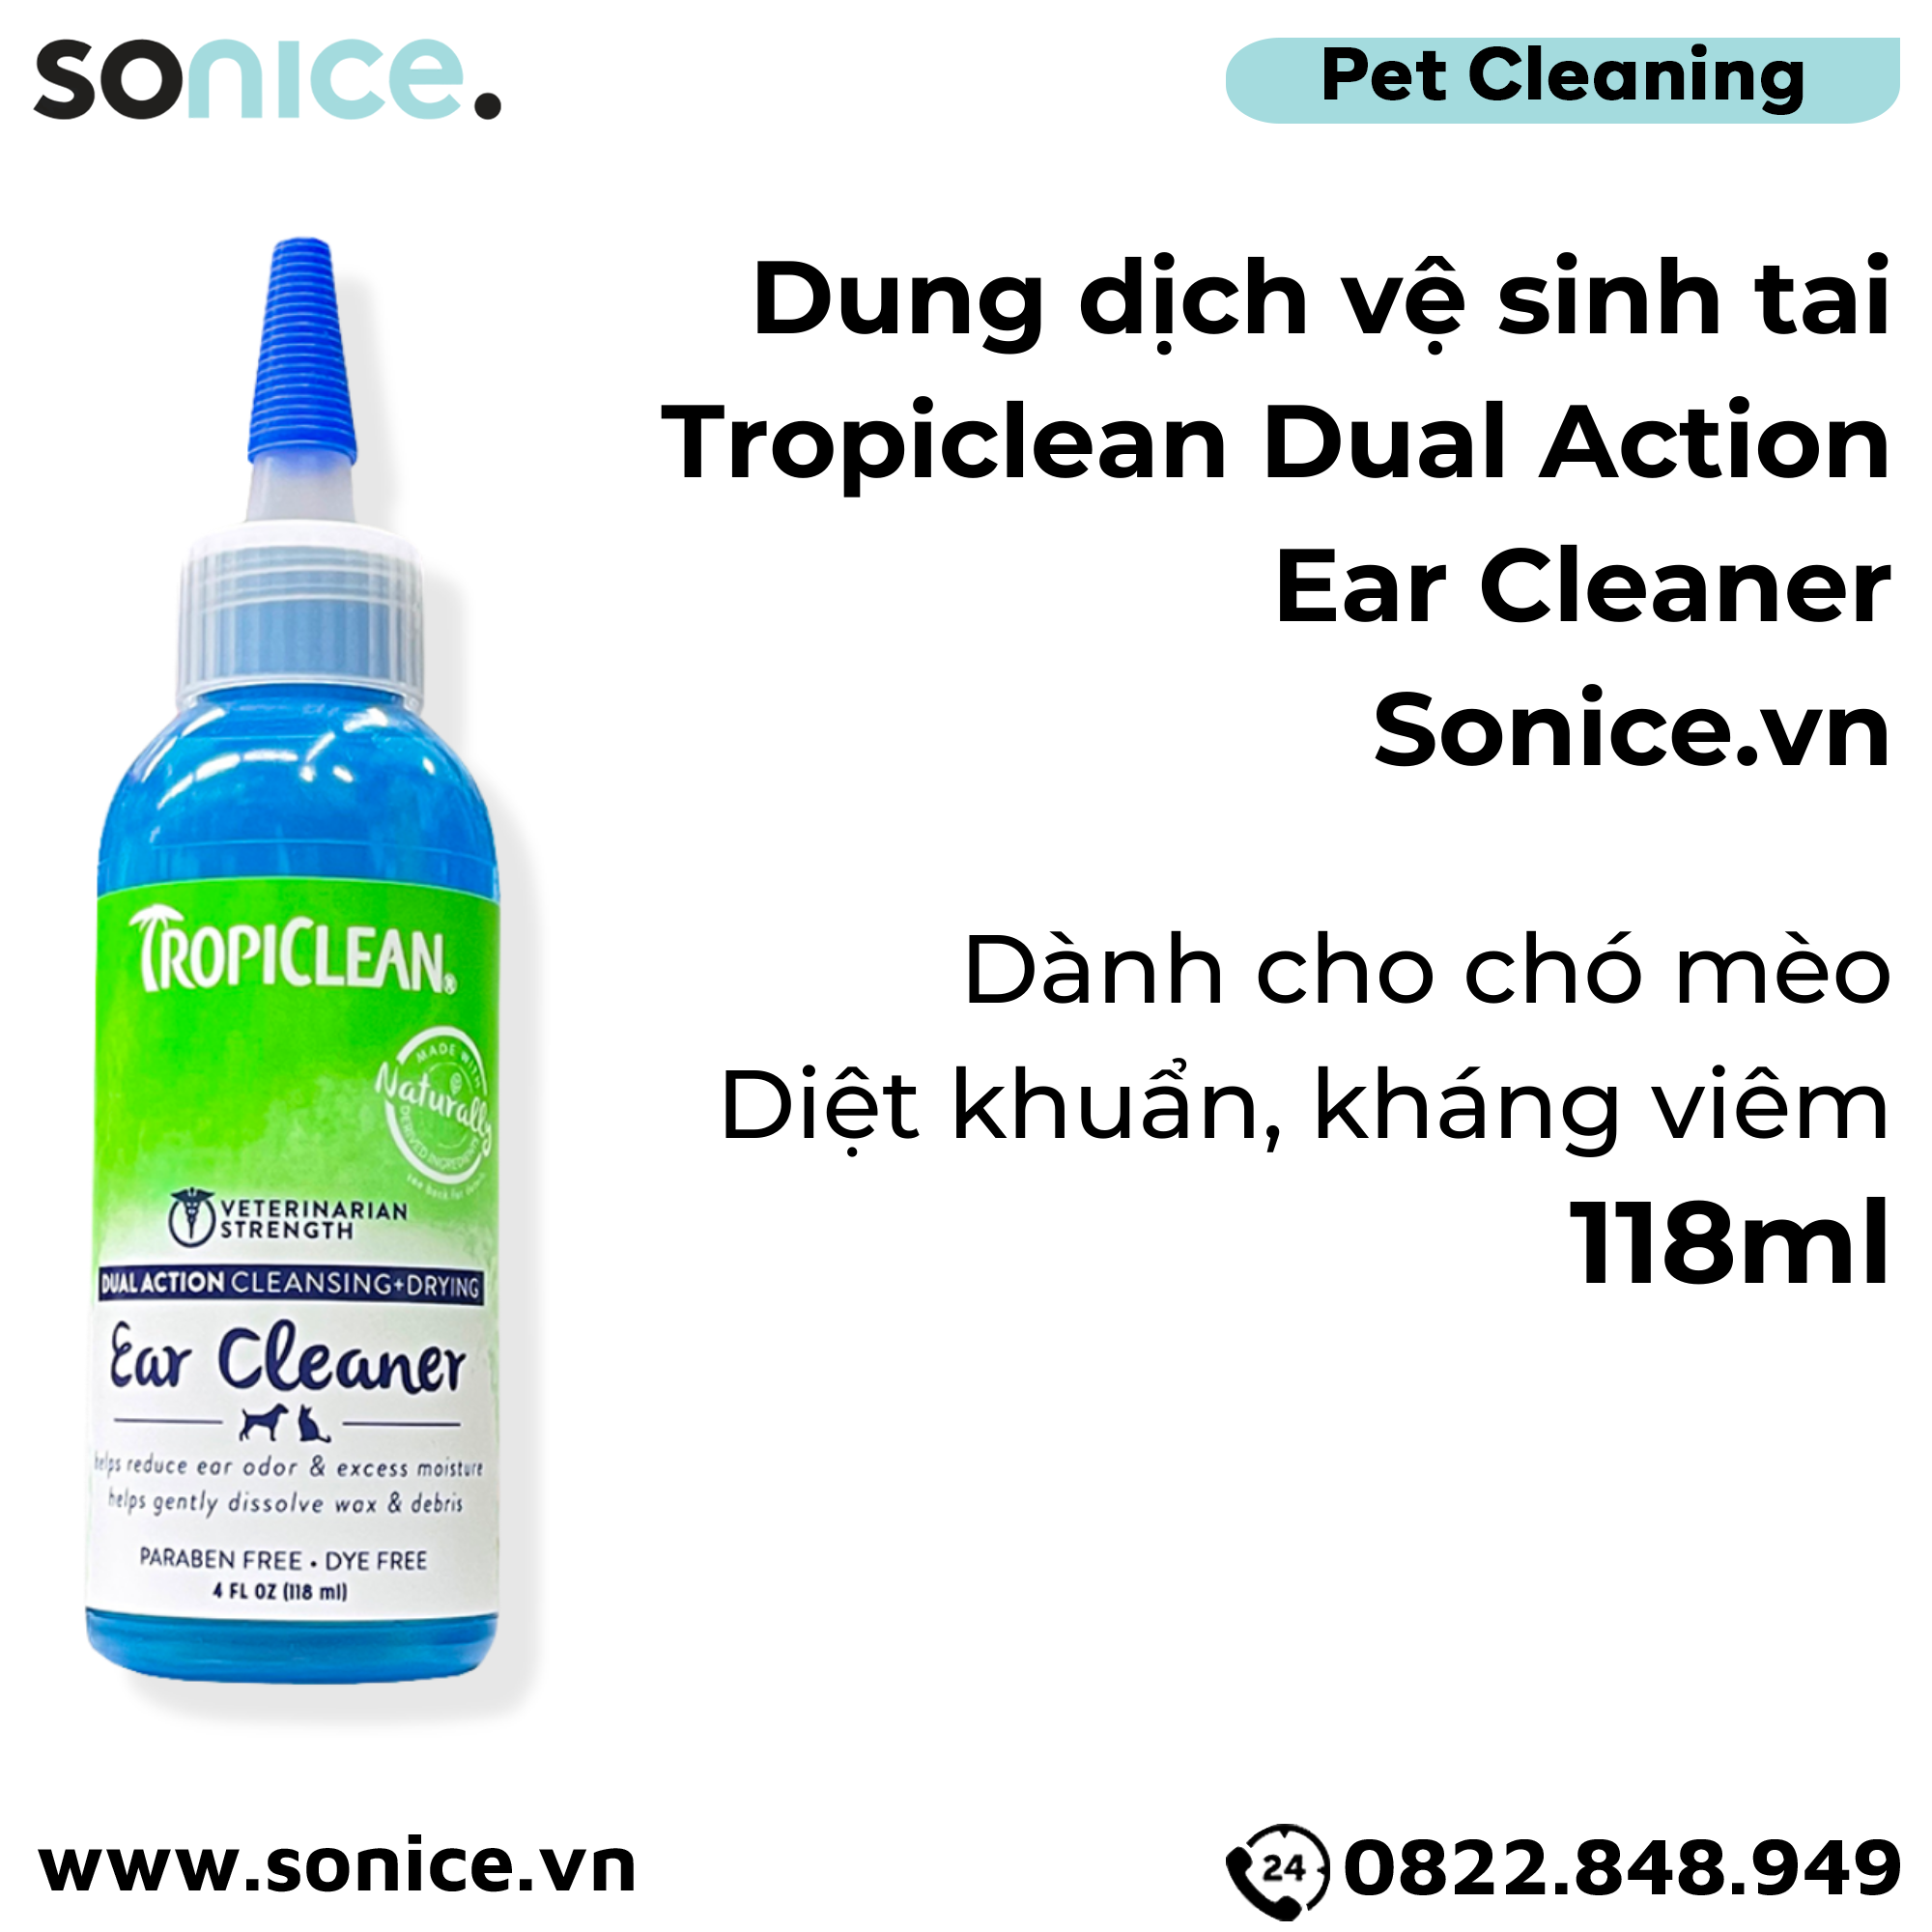  Dung dịch vệ sinh tai Tropiclean Dual Action Ear Cleaner 118ml - Diệt khuẩn, kháng viêm SONICE. 